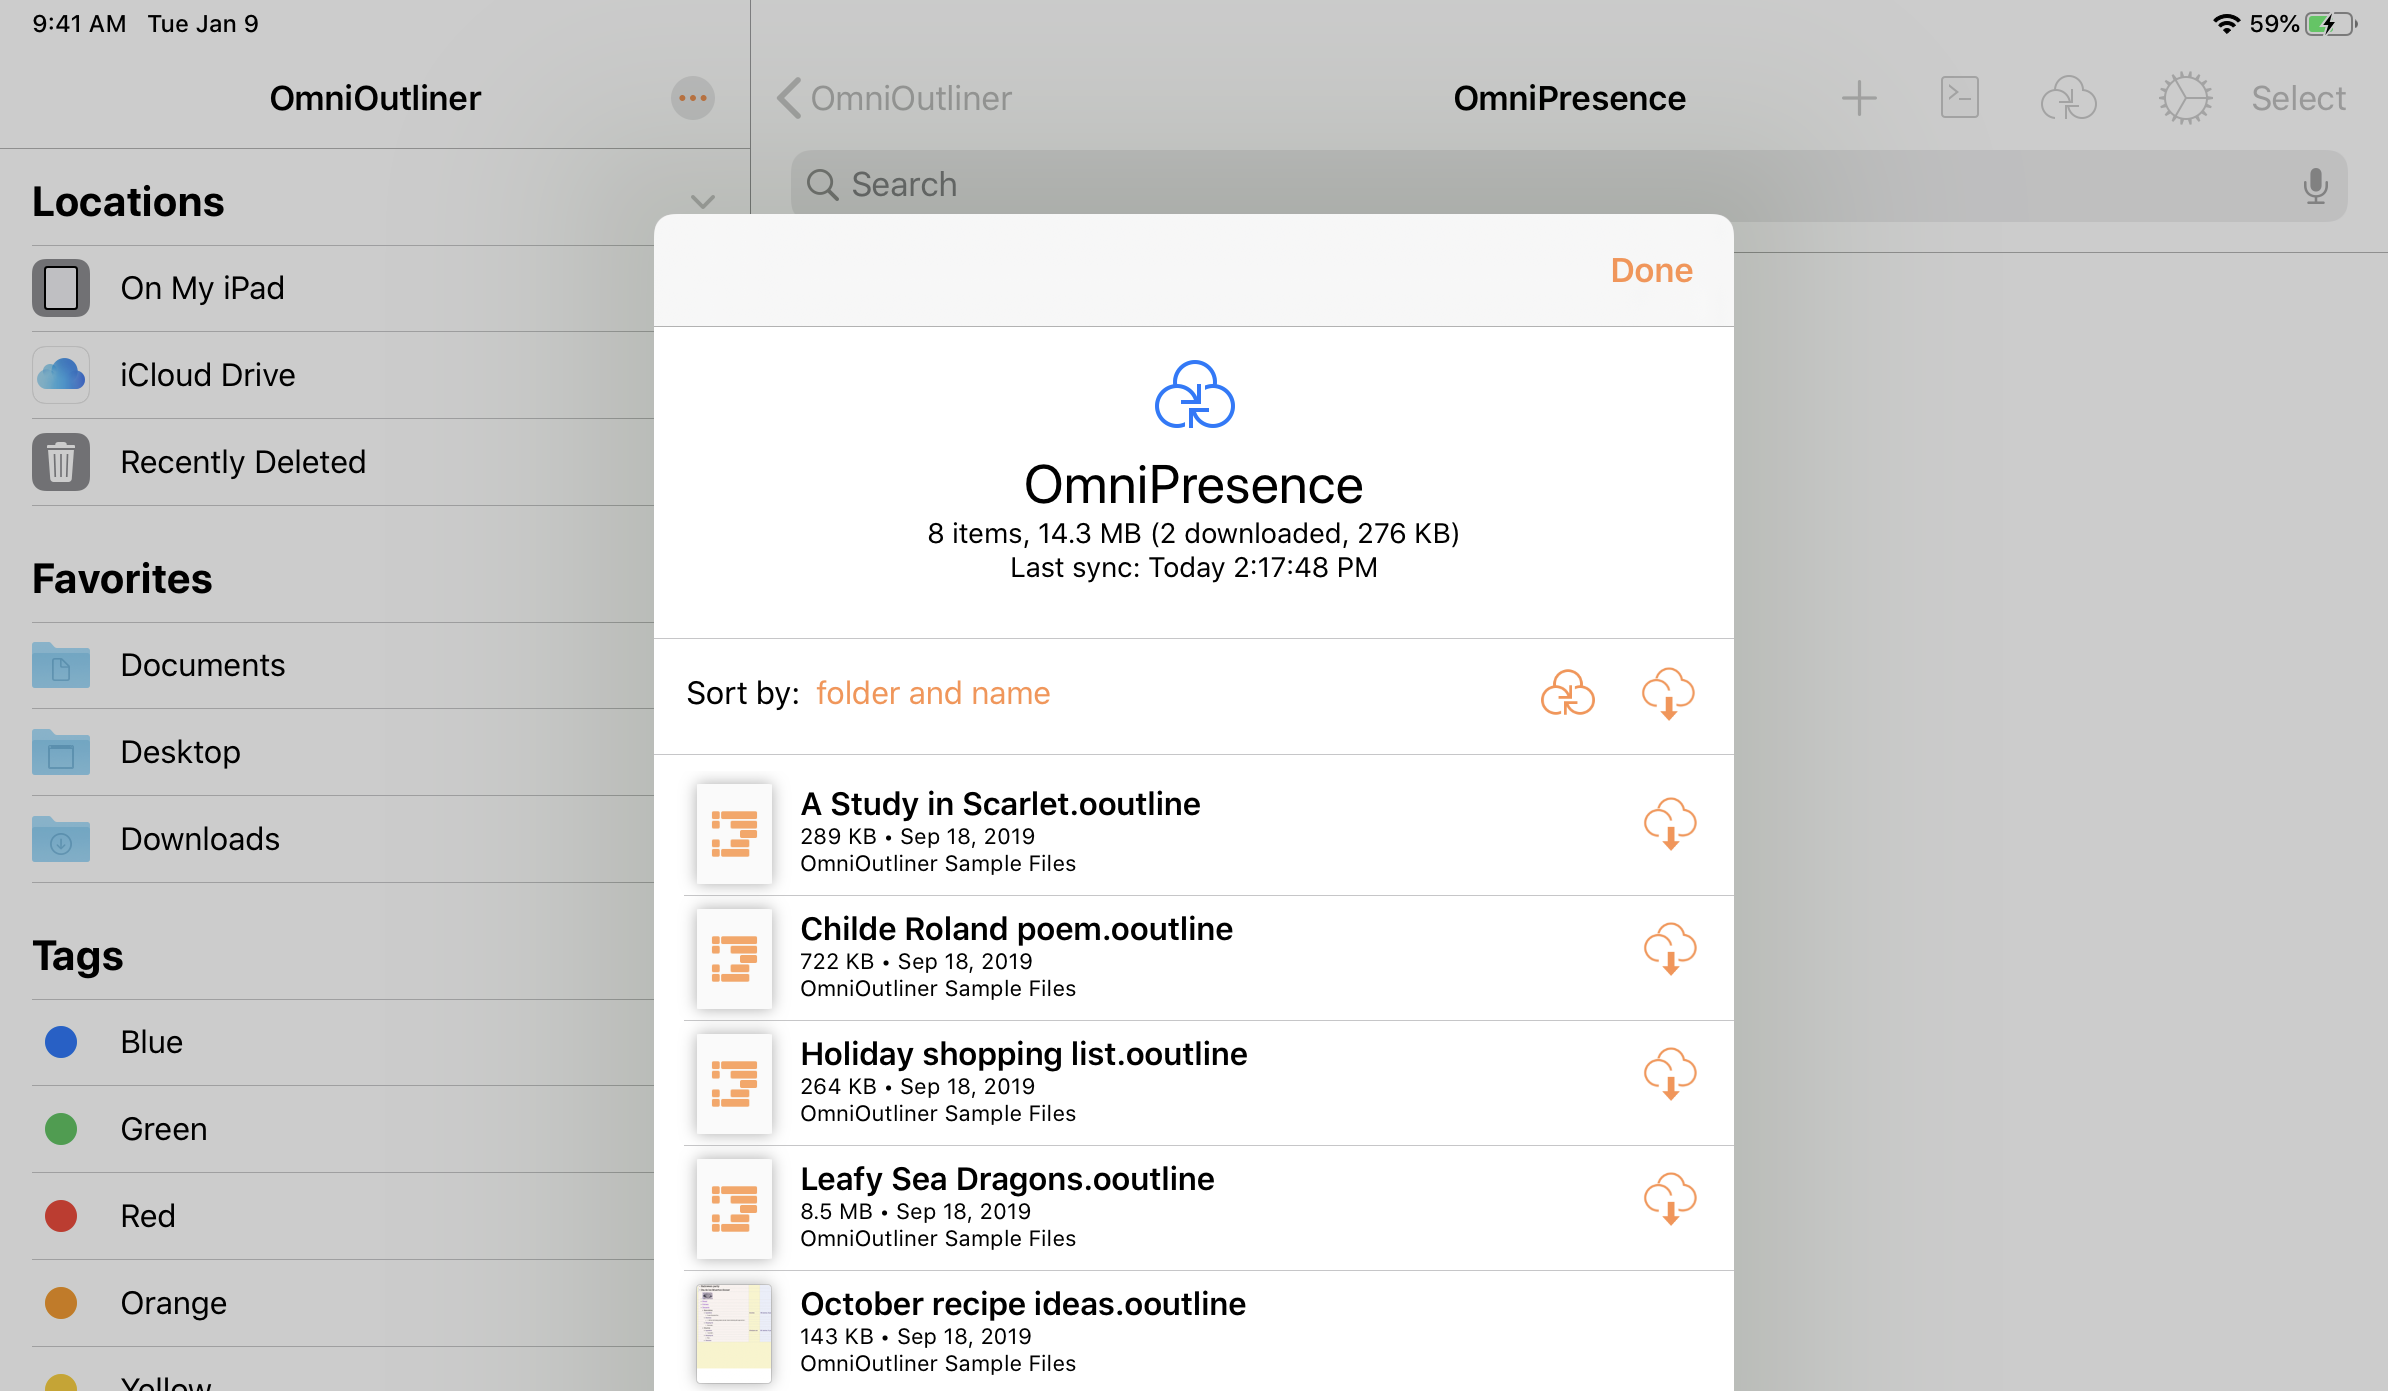 OmniPresence Download Manager